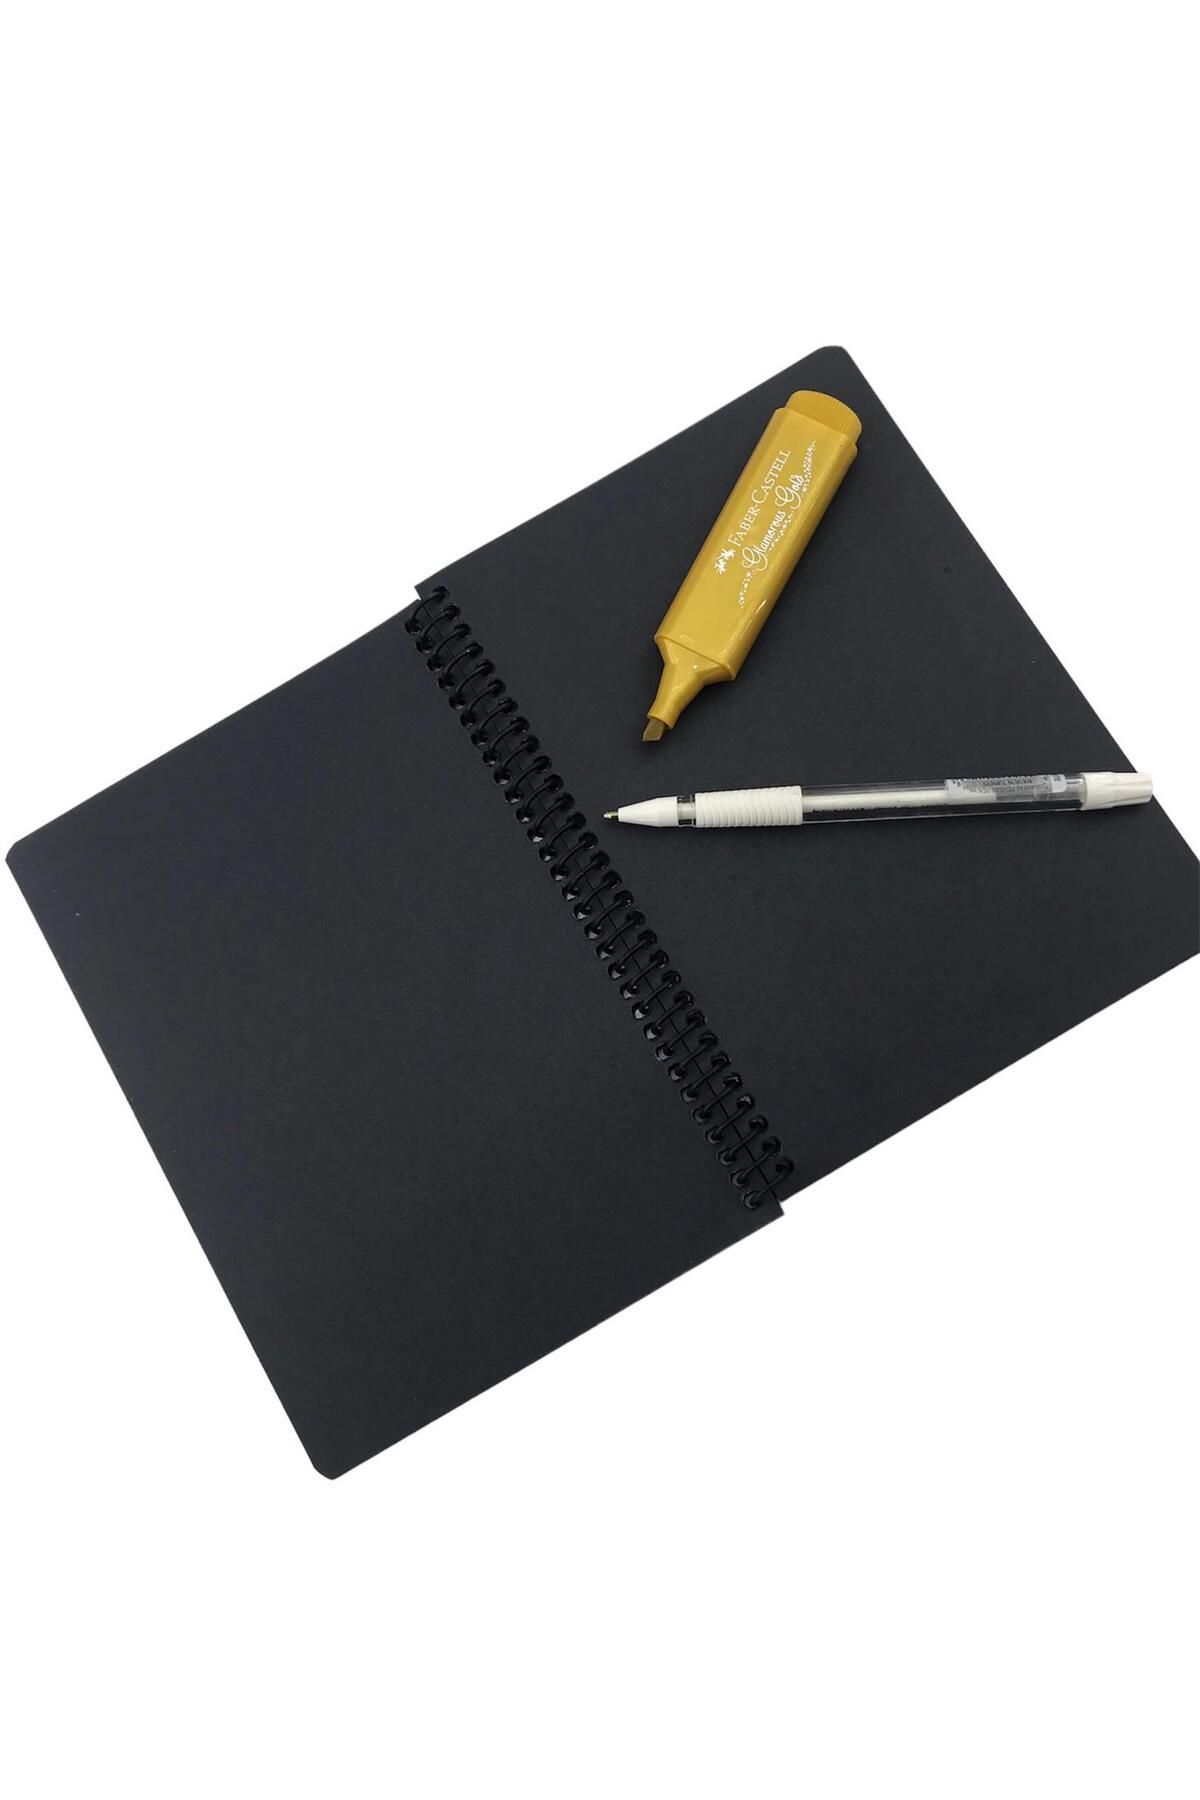 MEKAFİX Cover Patterned Black Notebook Black Leaf Notebook - Black Page  Notebook White Gel Pen Side